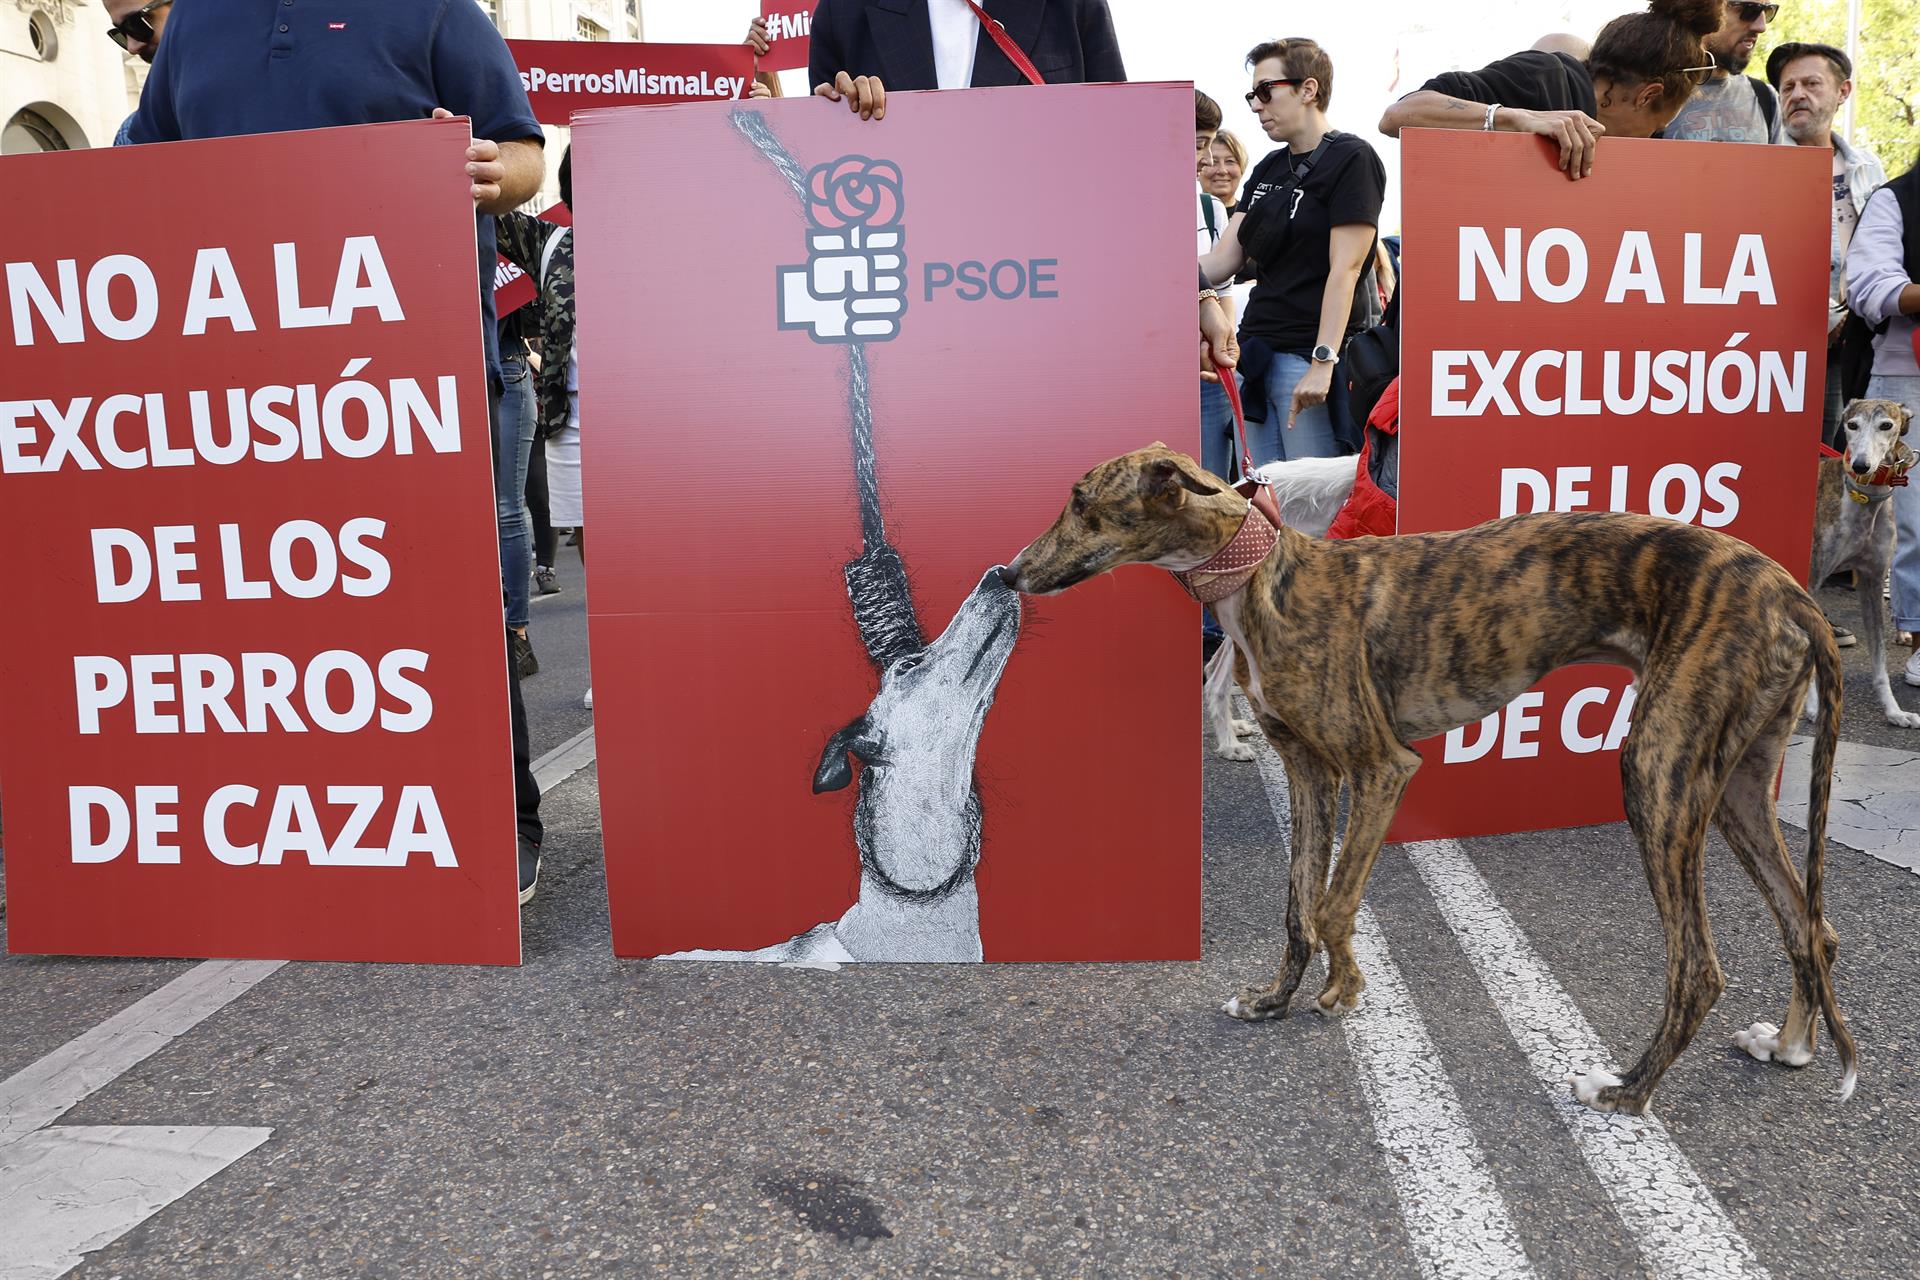 Asociaciones animalistas se manifiestan frente al Congreso para pedir al PSOE la retirada de la enmienda a la Ley de Protección Animal en la que pide excluir a los perros usados para cazar